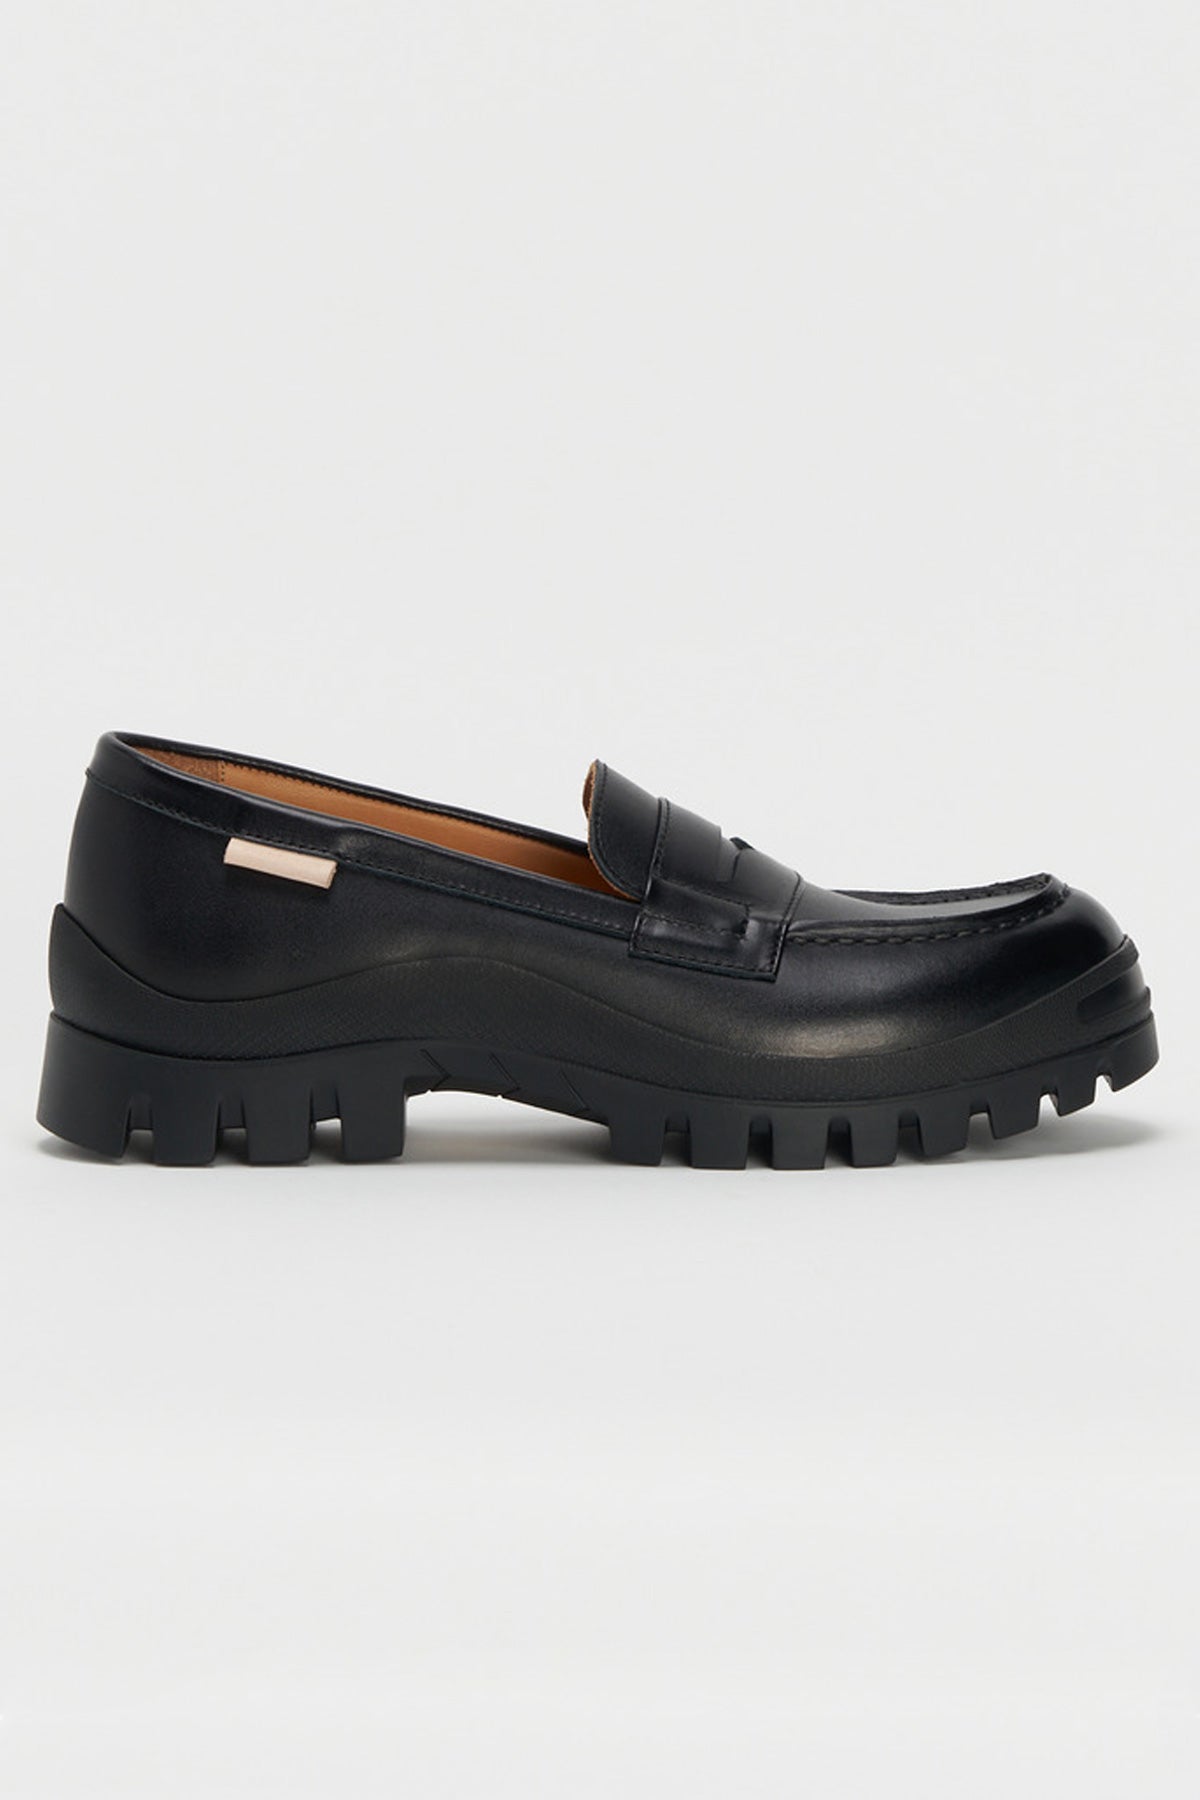 Loafer #2146 - Black